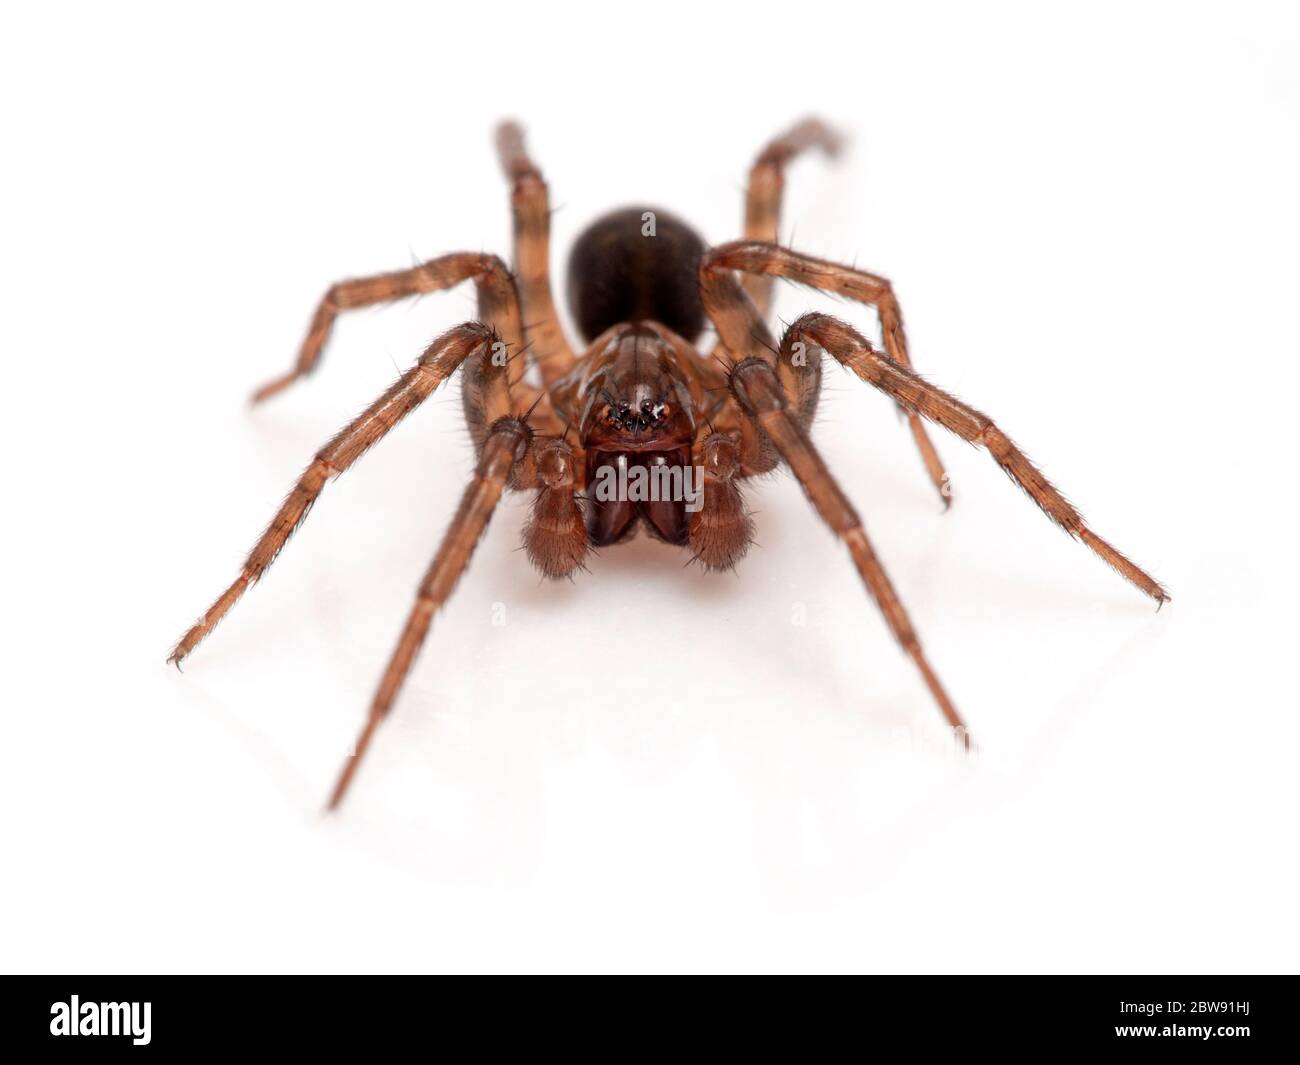 Jolie araignée brune terrestre (Cybaeus eutypus), isolée sur fond blanc, vue de face. Du marais salé de Boundary Bay, Delta (Colombie-Britannique), Cana Banque D'Images